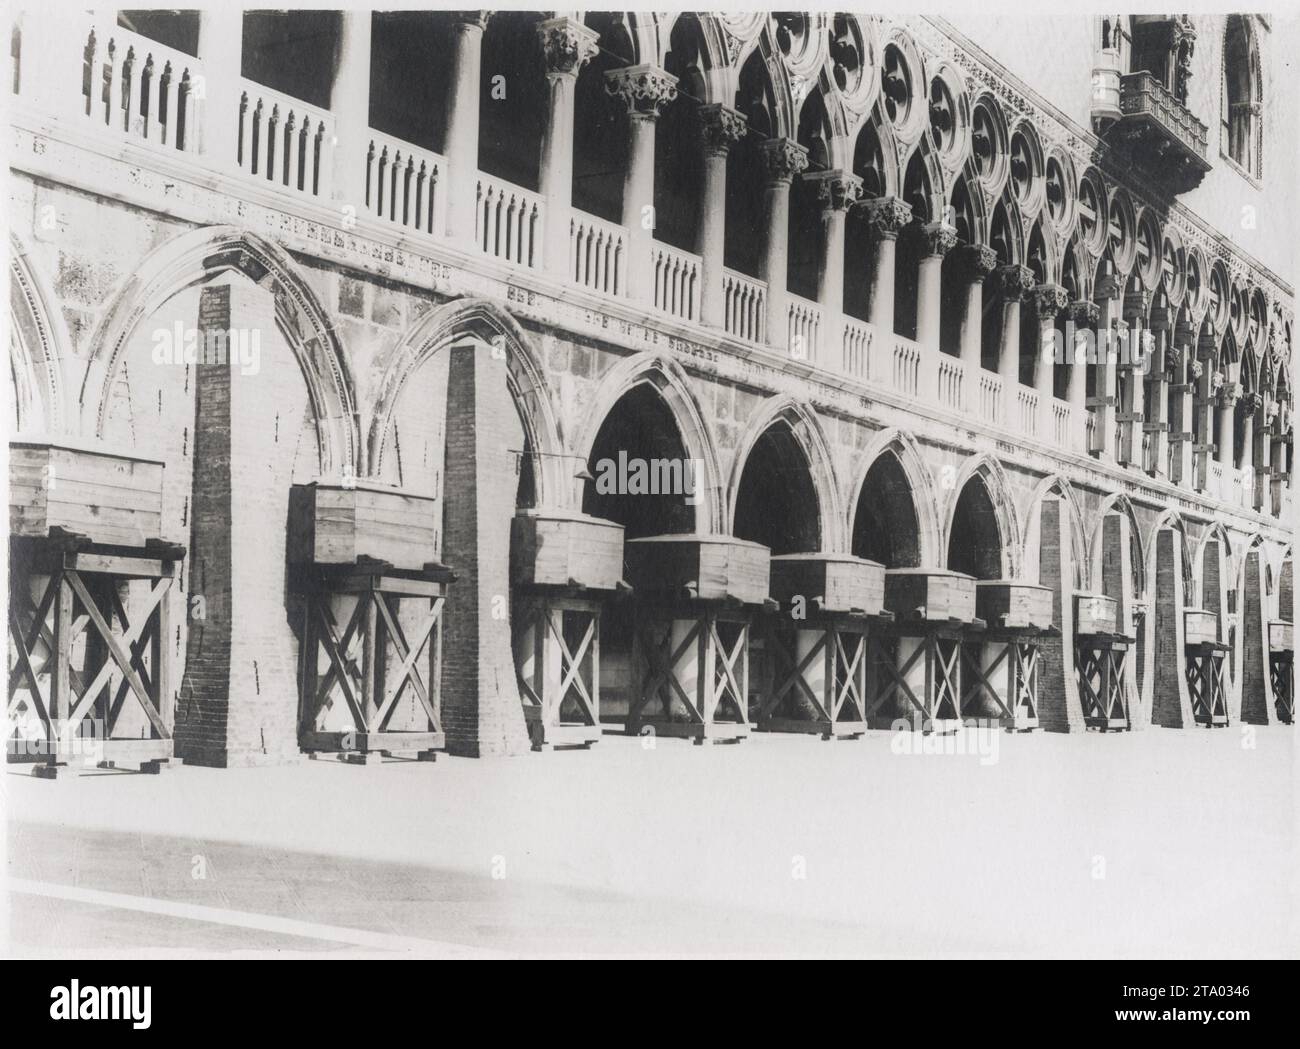 WW1 World War I - Sandbags in Venice, Italy Stock Photo